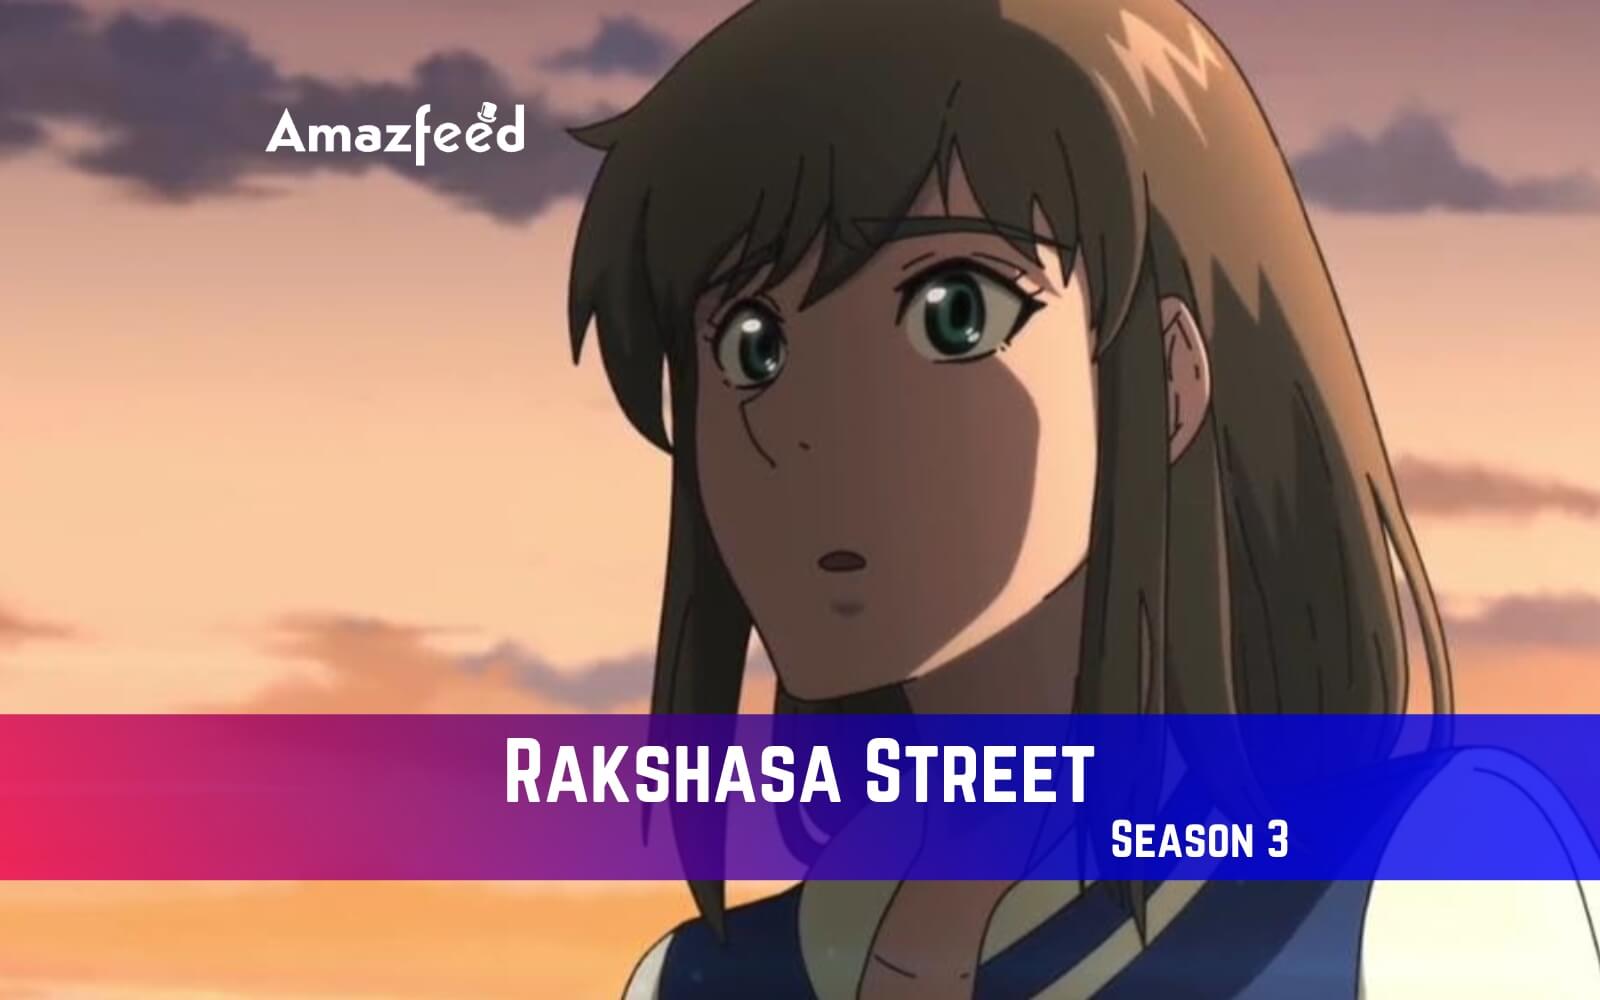 Rakshasa Street: The Anime Game